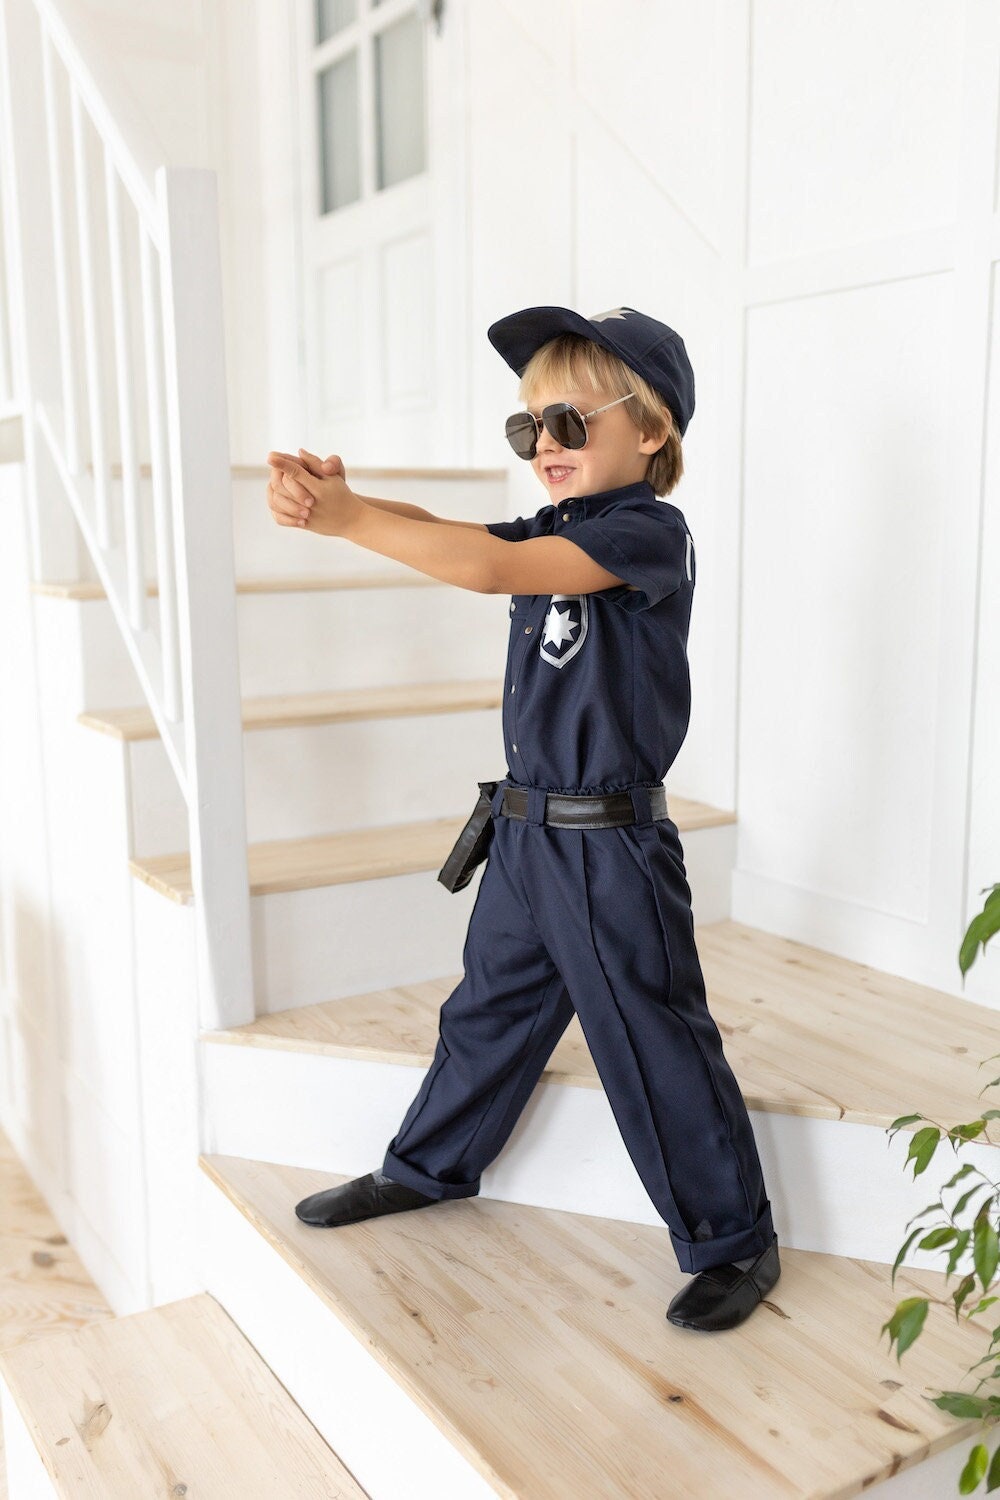 Costume de police pour enfants Kit de jeu de rôle Liban